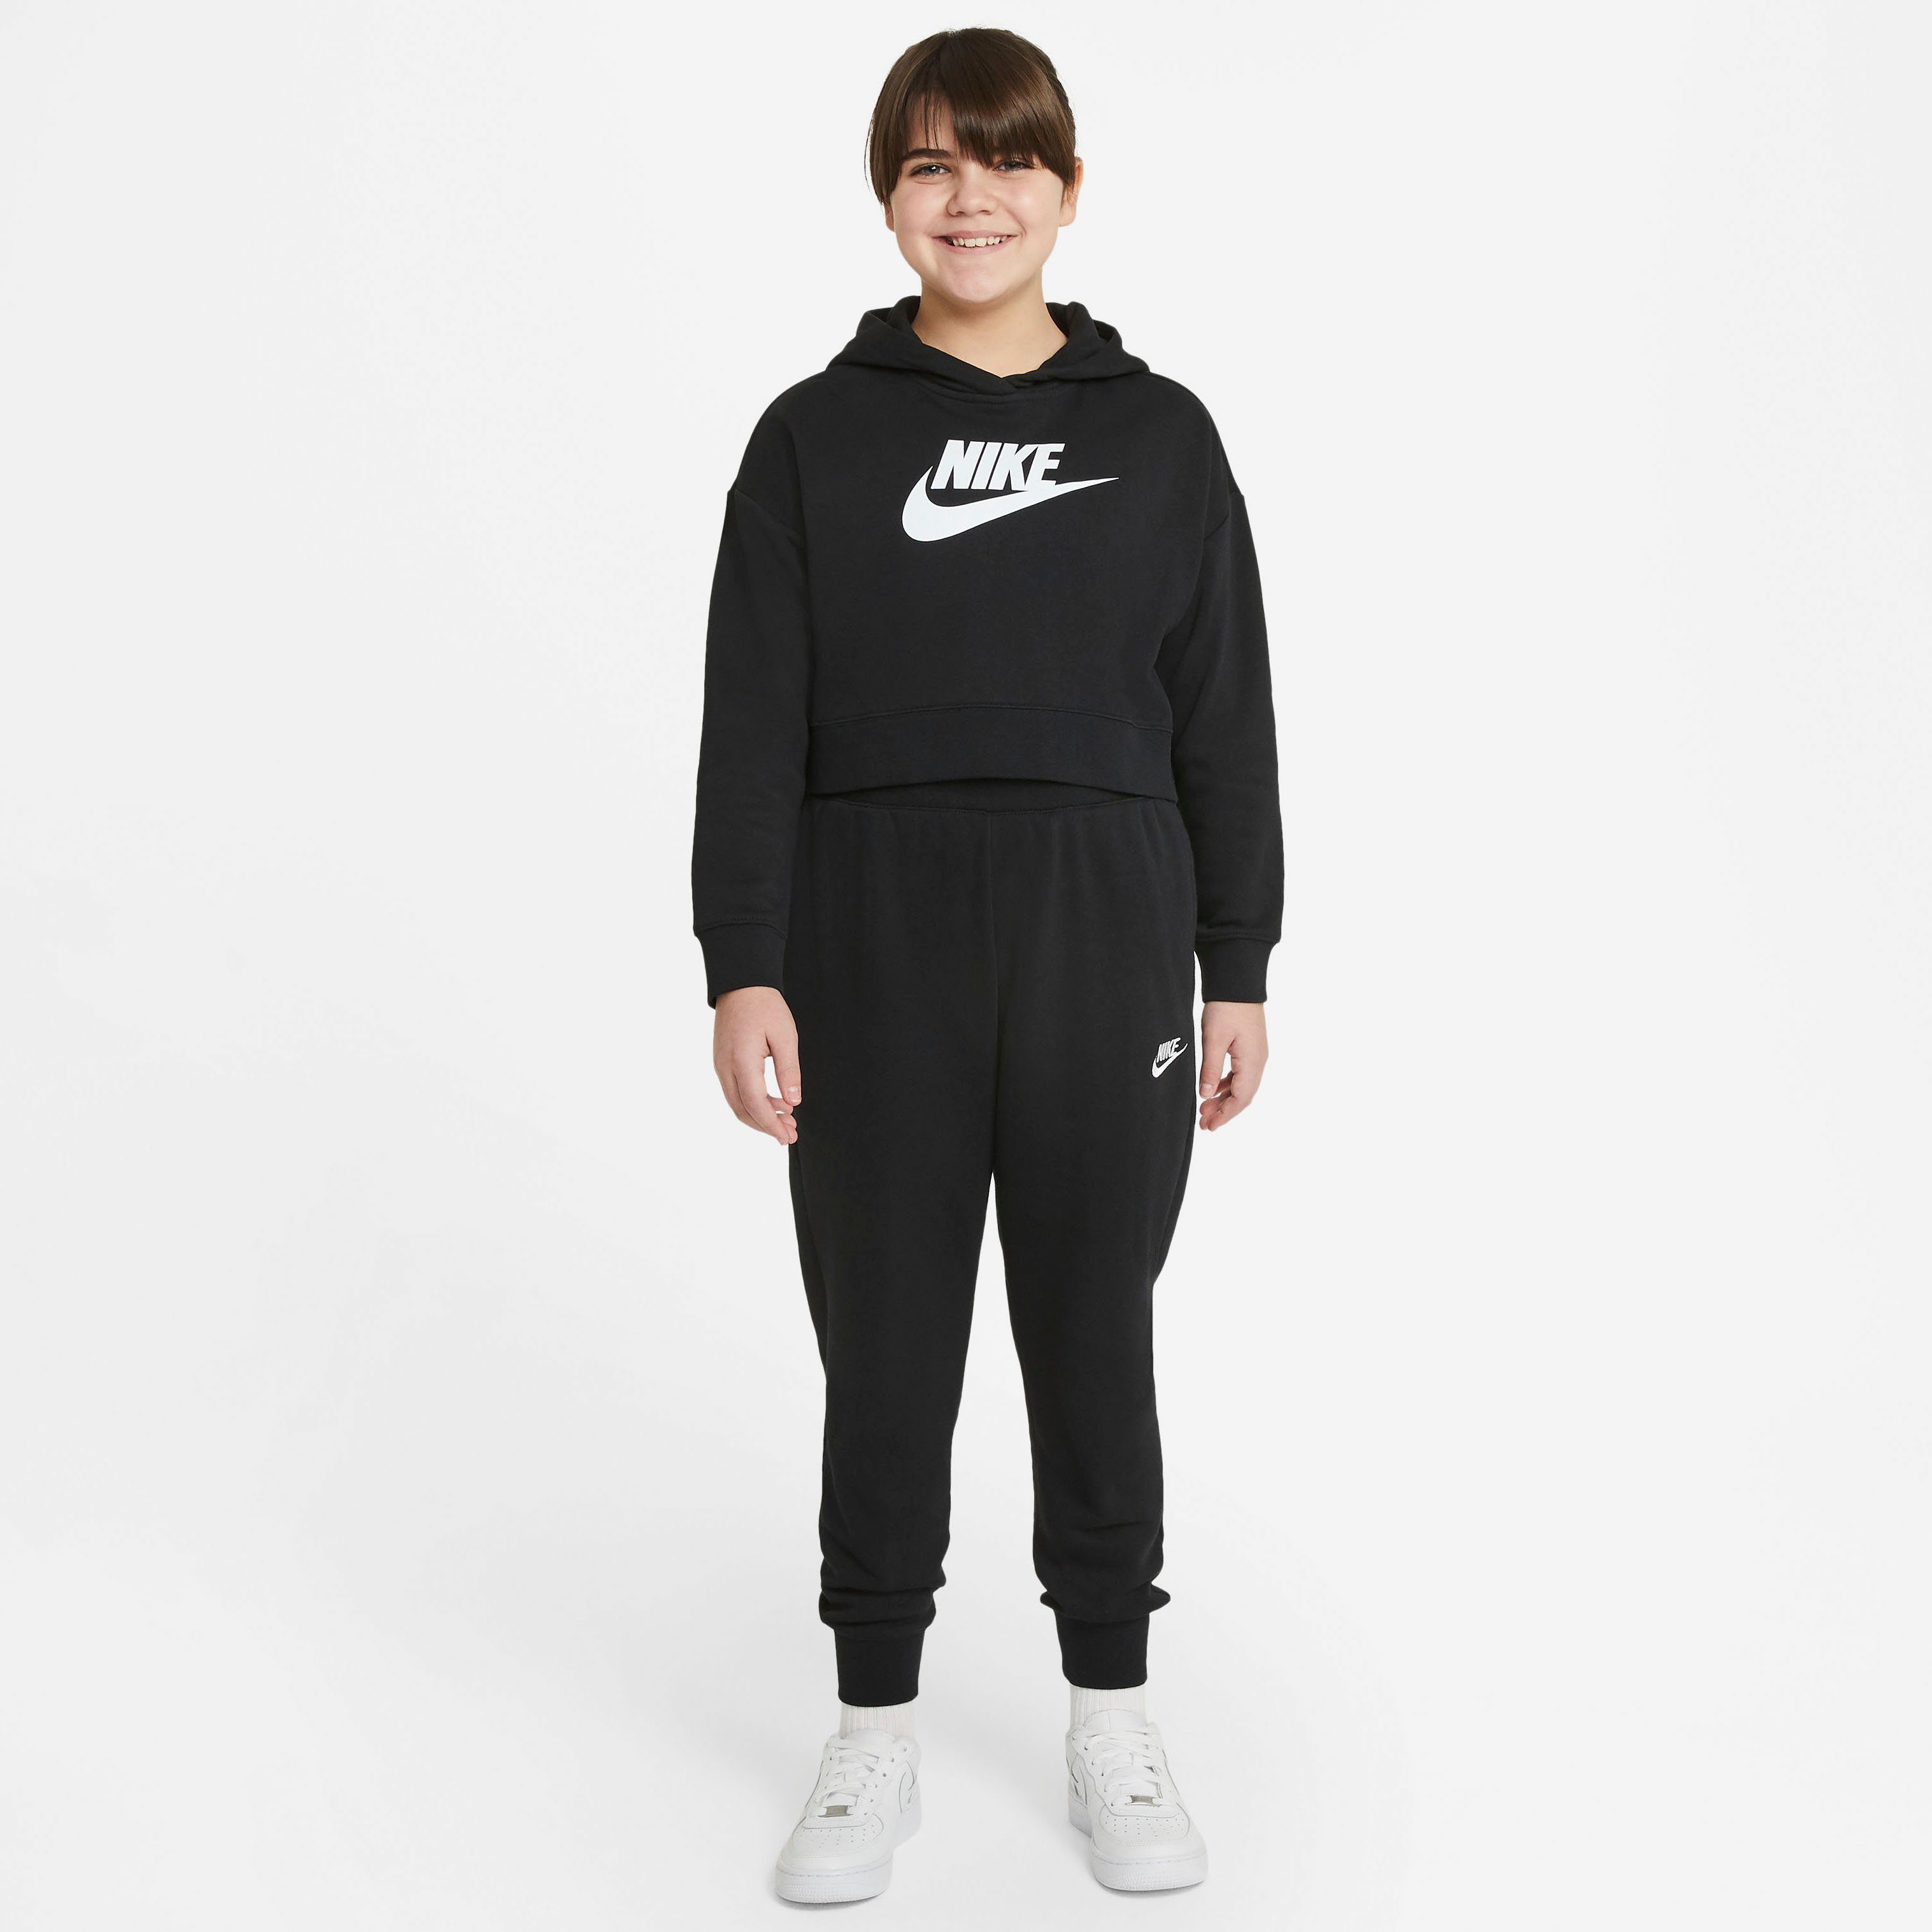 Nike Sportswear Jogginghose Kids' Club Big Fleece (Girls) Pants schwarz